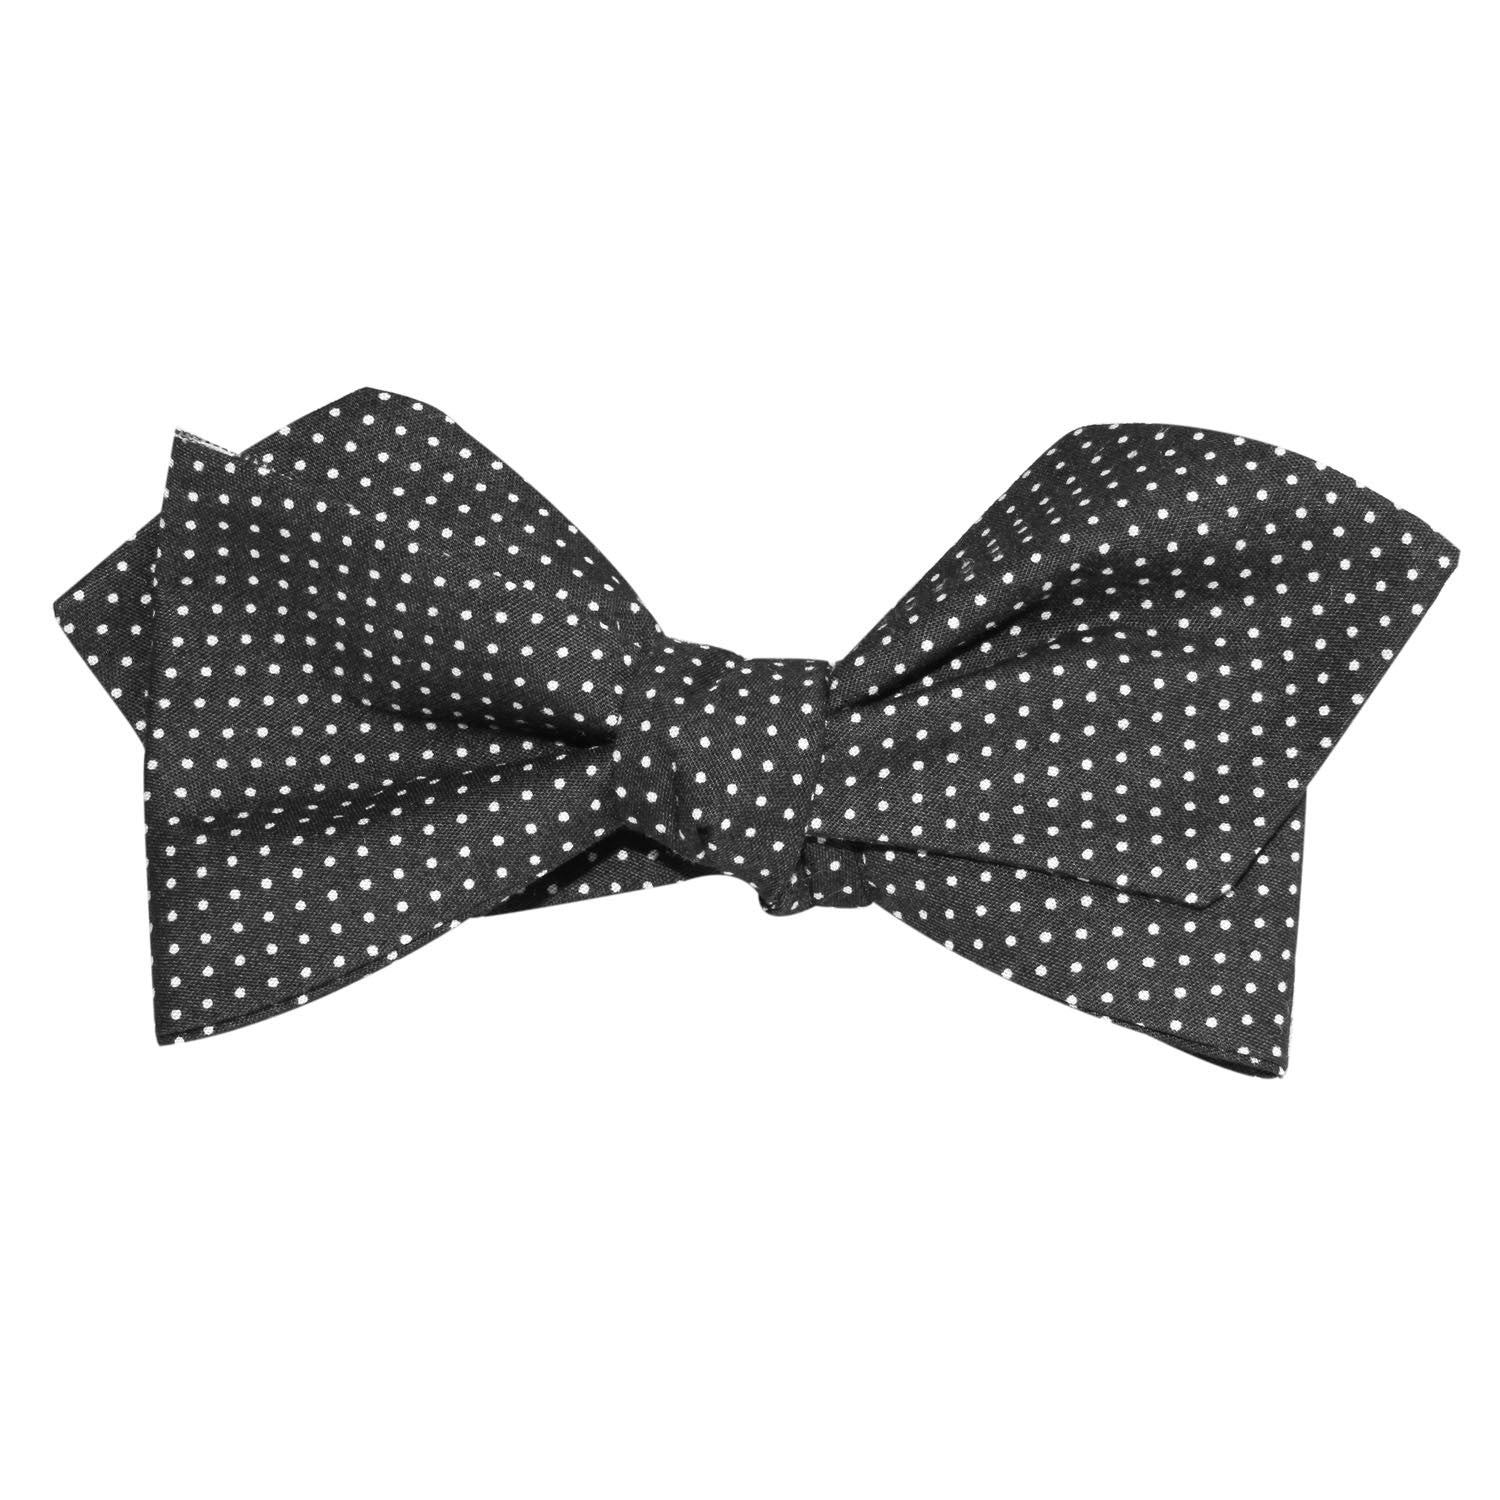 Black Cotton with White Mini Polka Dots Self Tie Diamond Tip Bow Tie 2